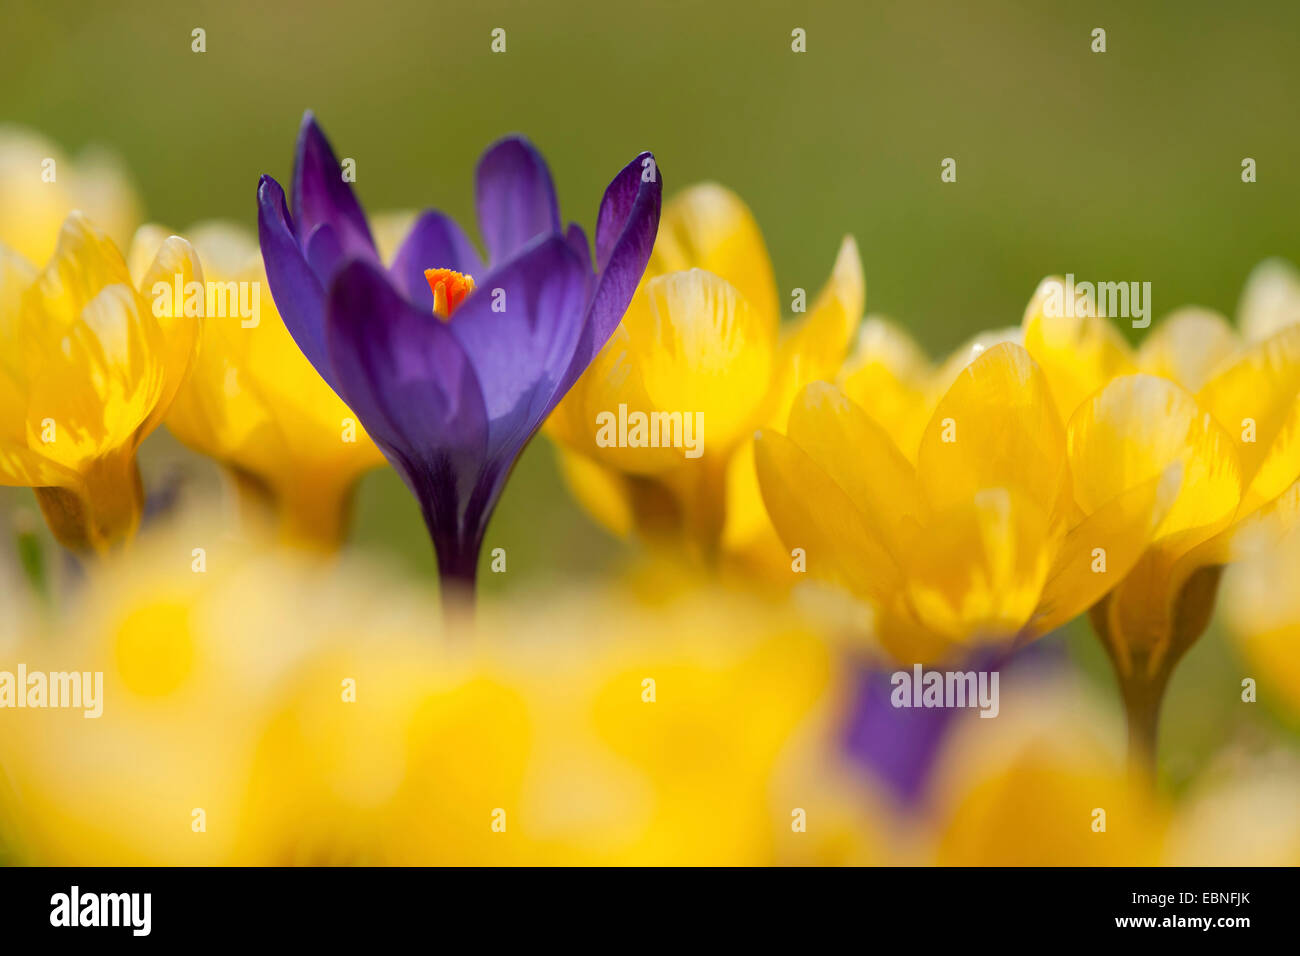 Dutch crocus, spring crocus (Crocus vernus, Crocus neapolitanus), violett and yellow flowers Stock Photo